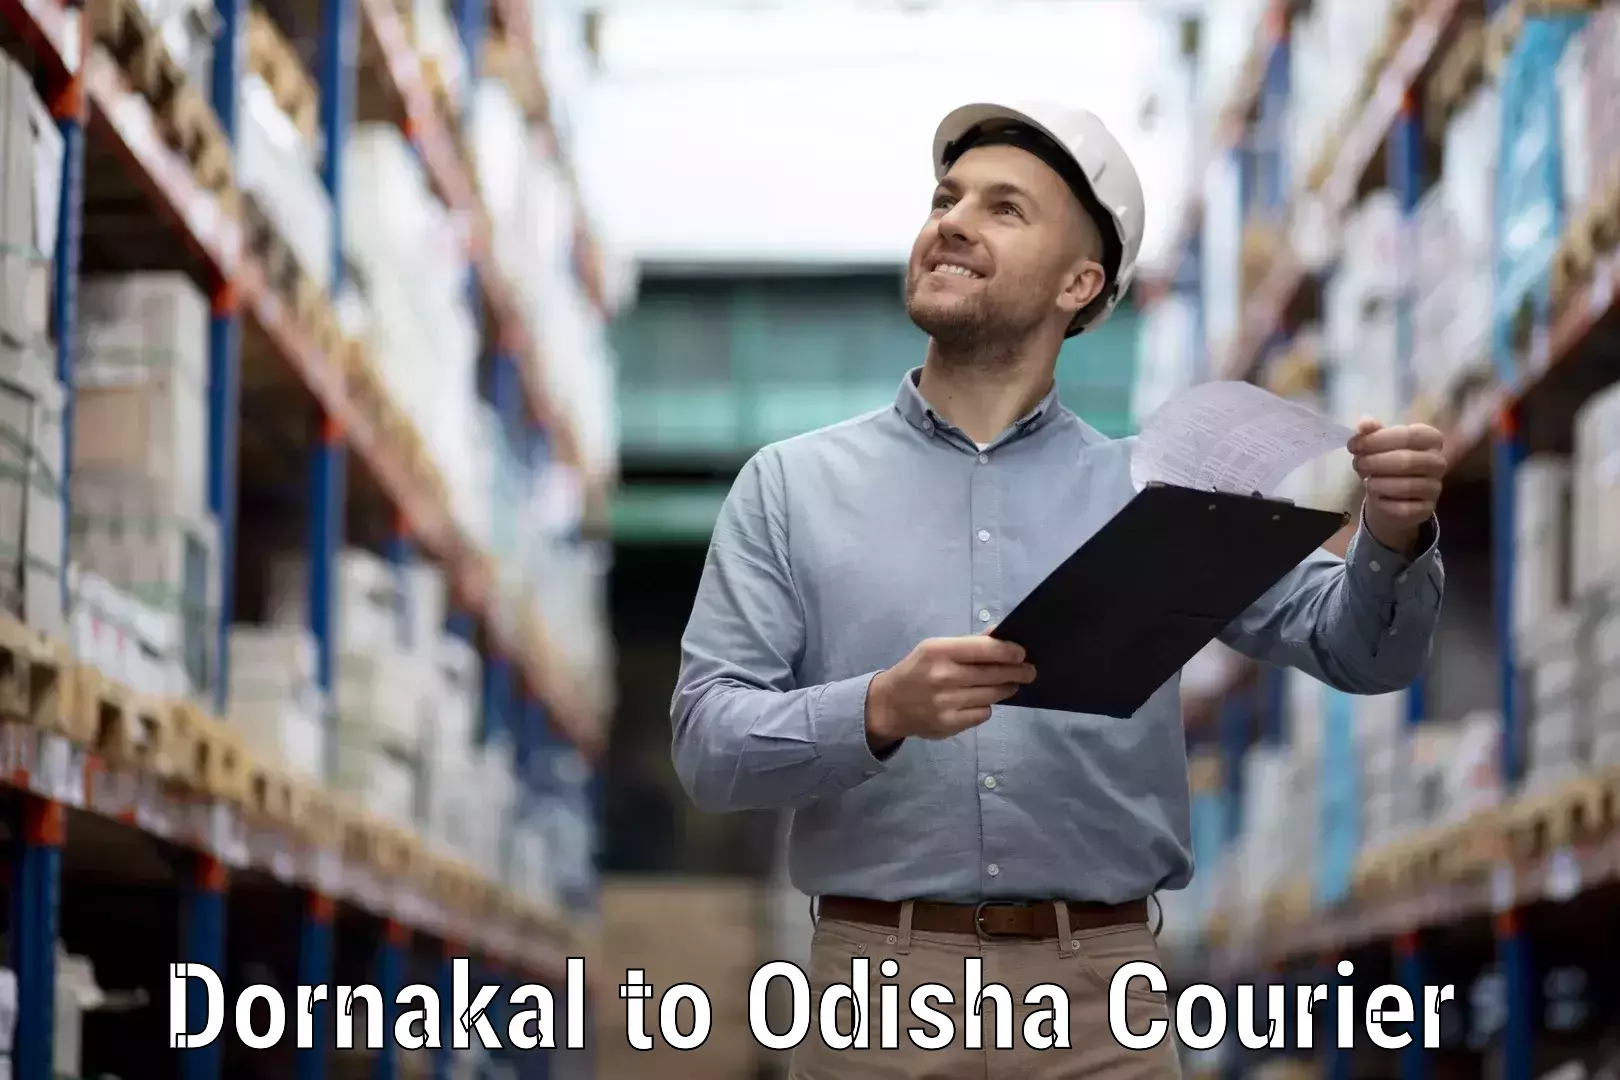 Custom courier packaging in Dornakal to Kotapad